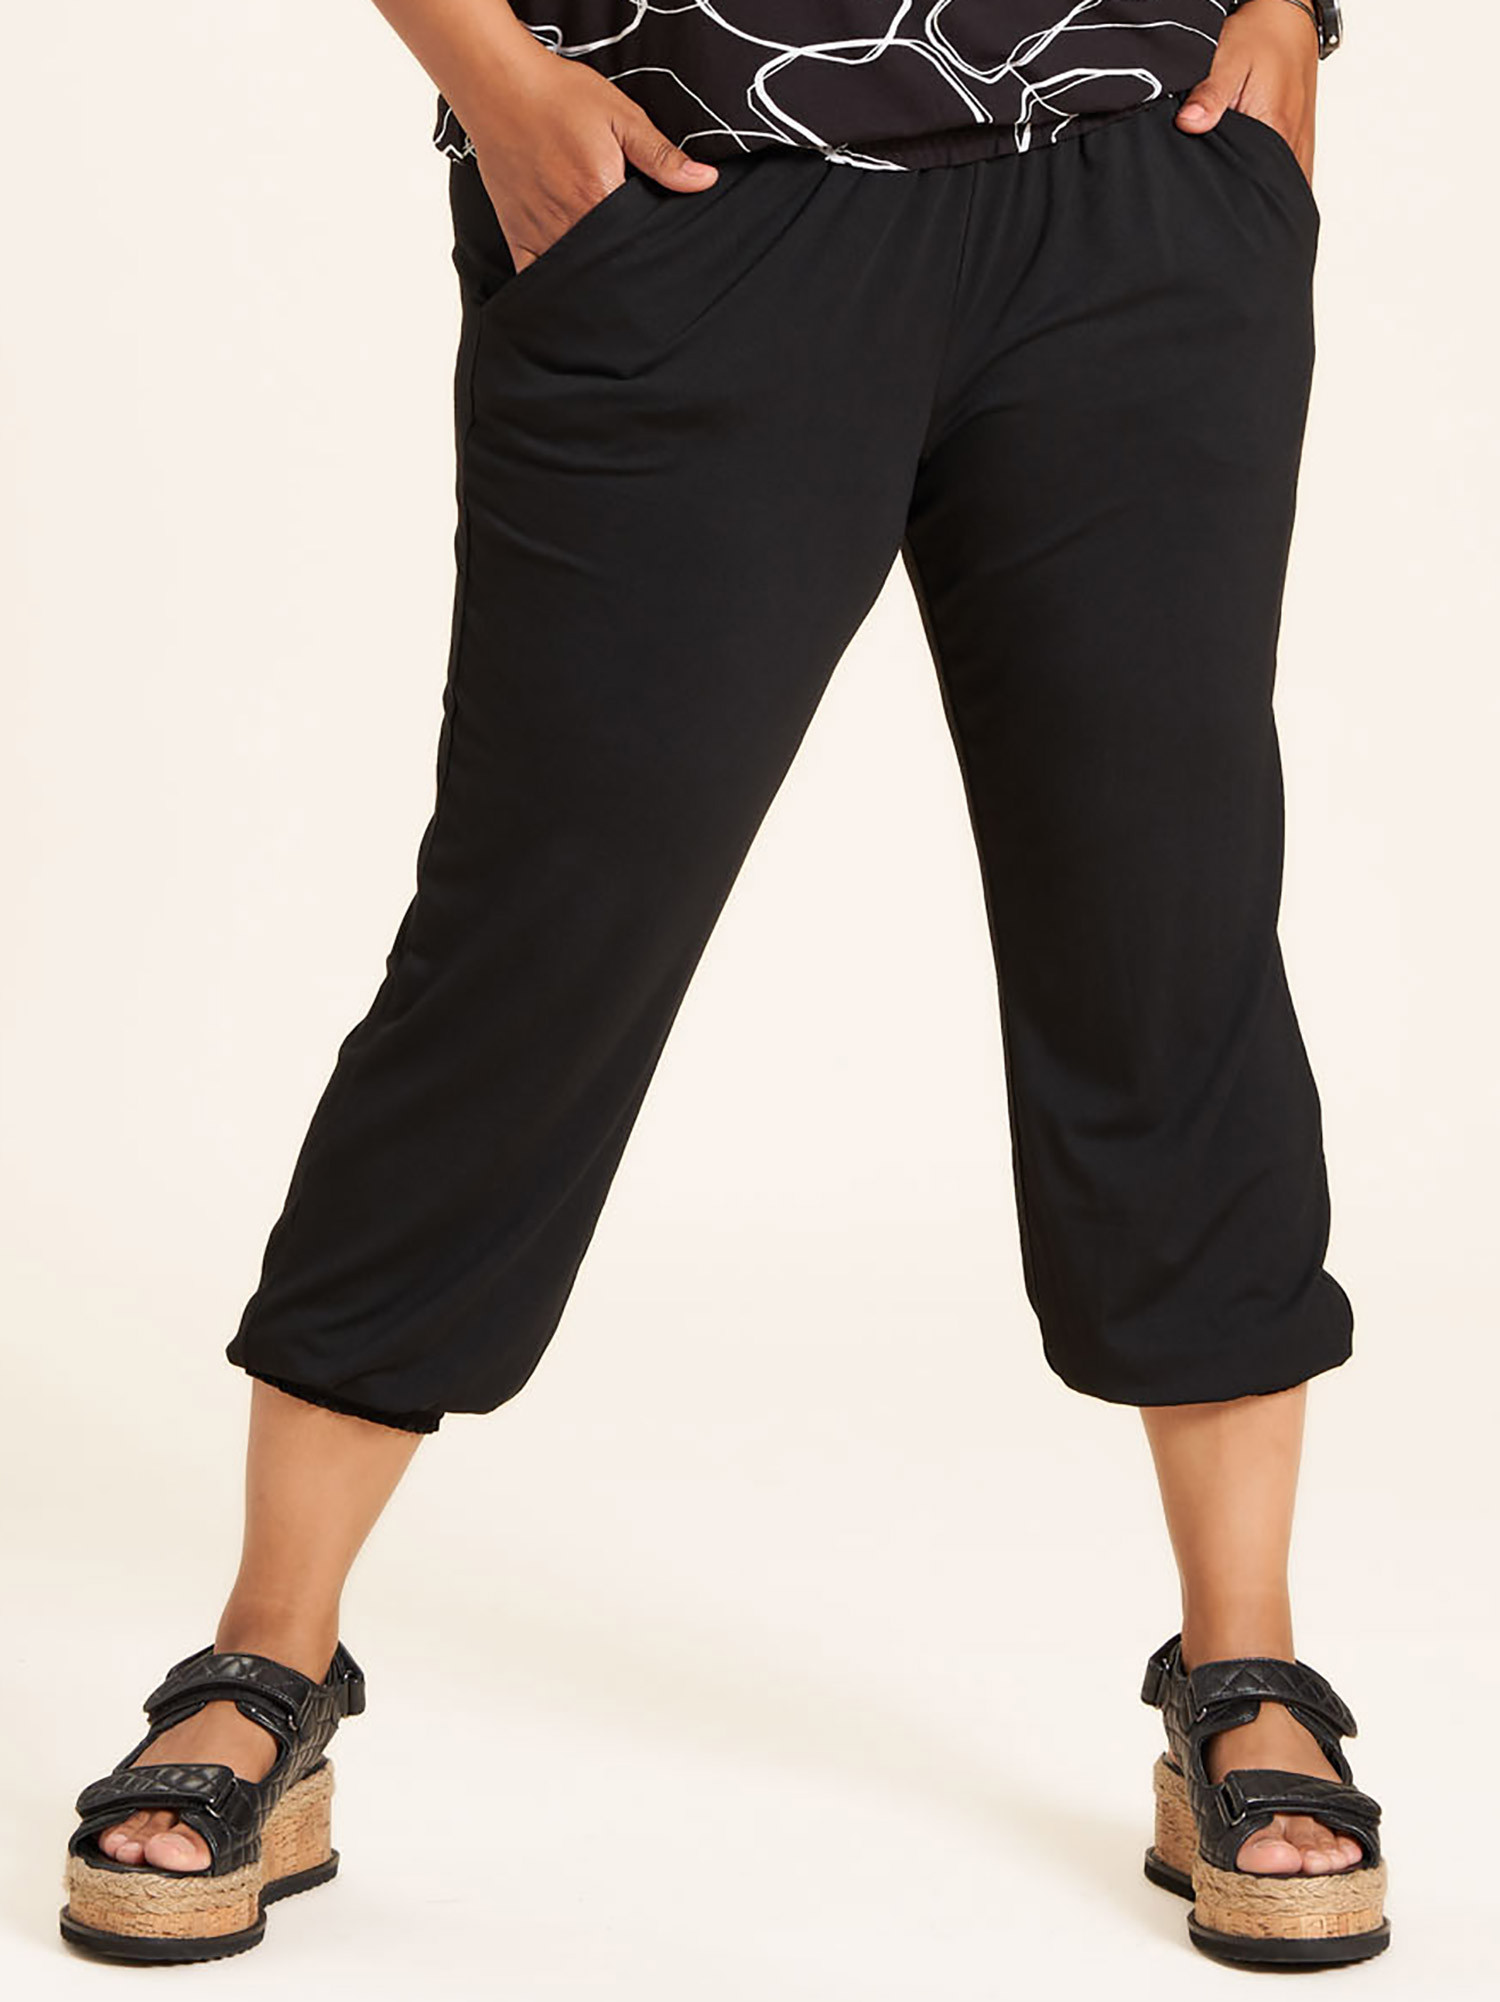 Emina - Svarta shorts i bomullstrikå med crepe yta